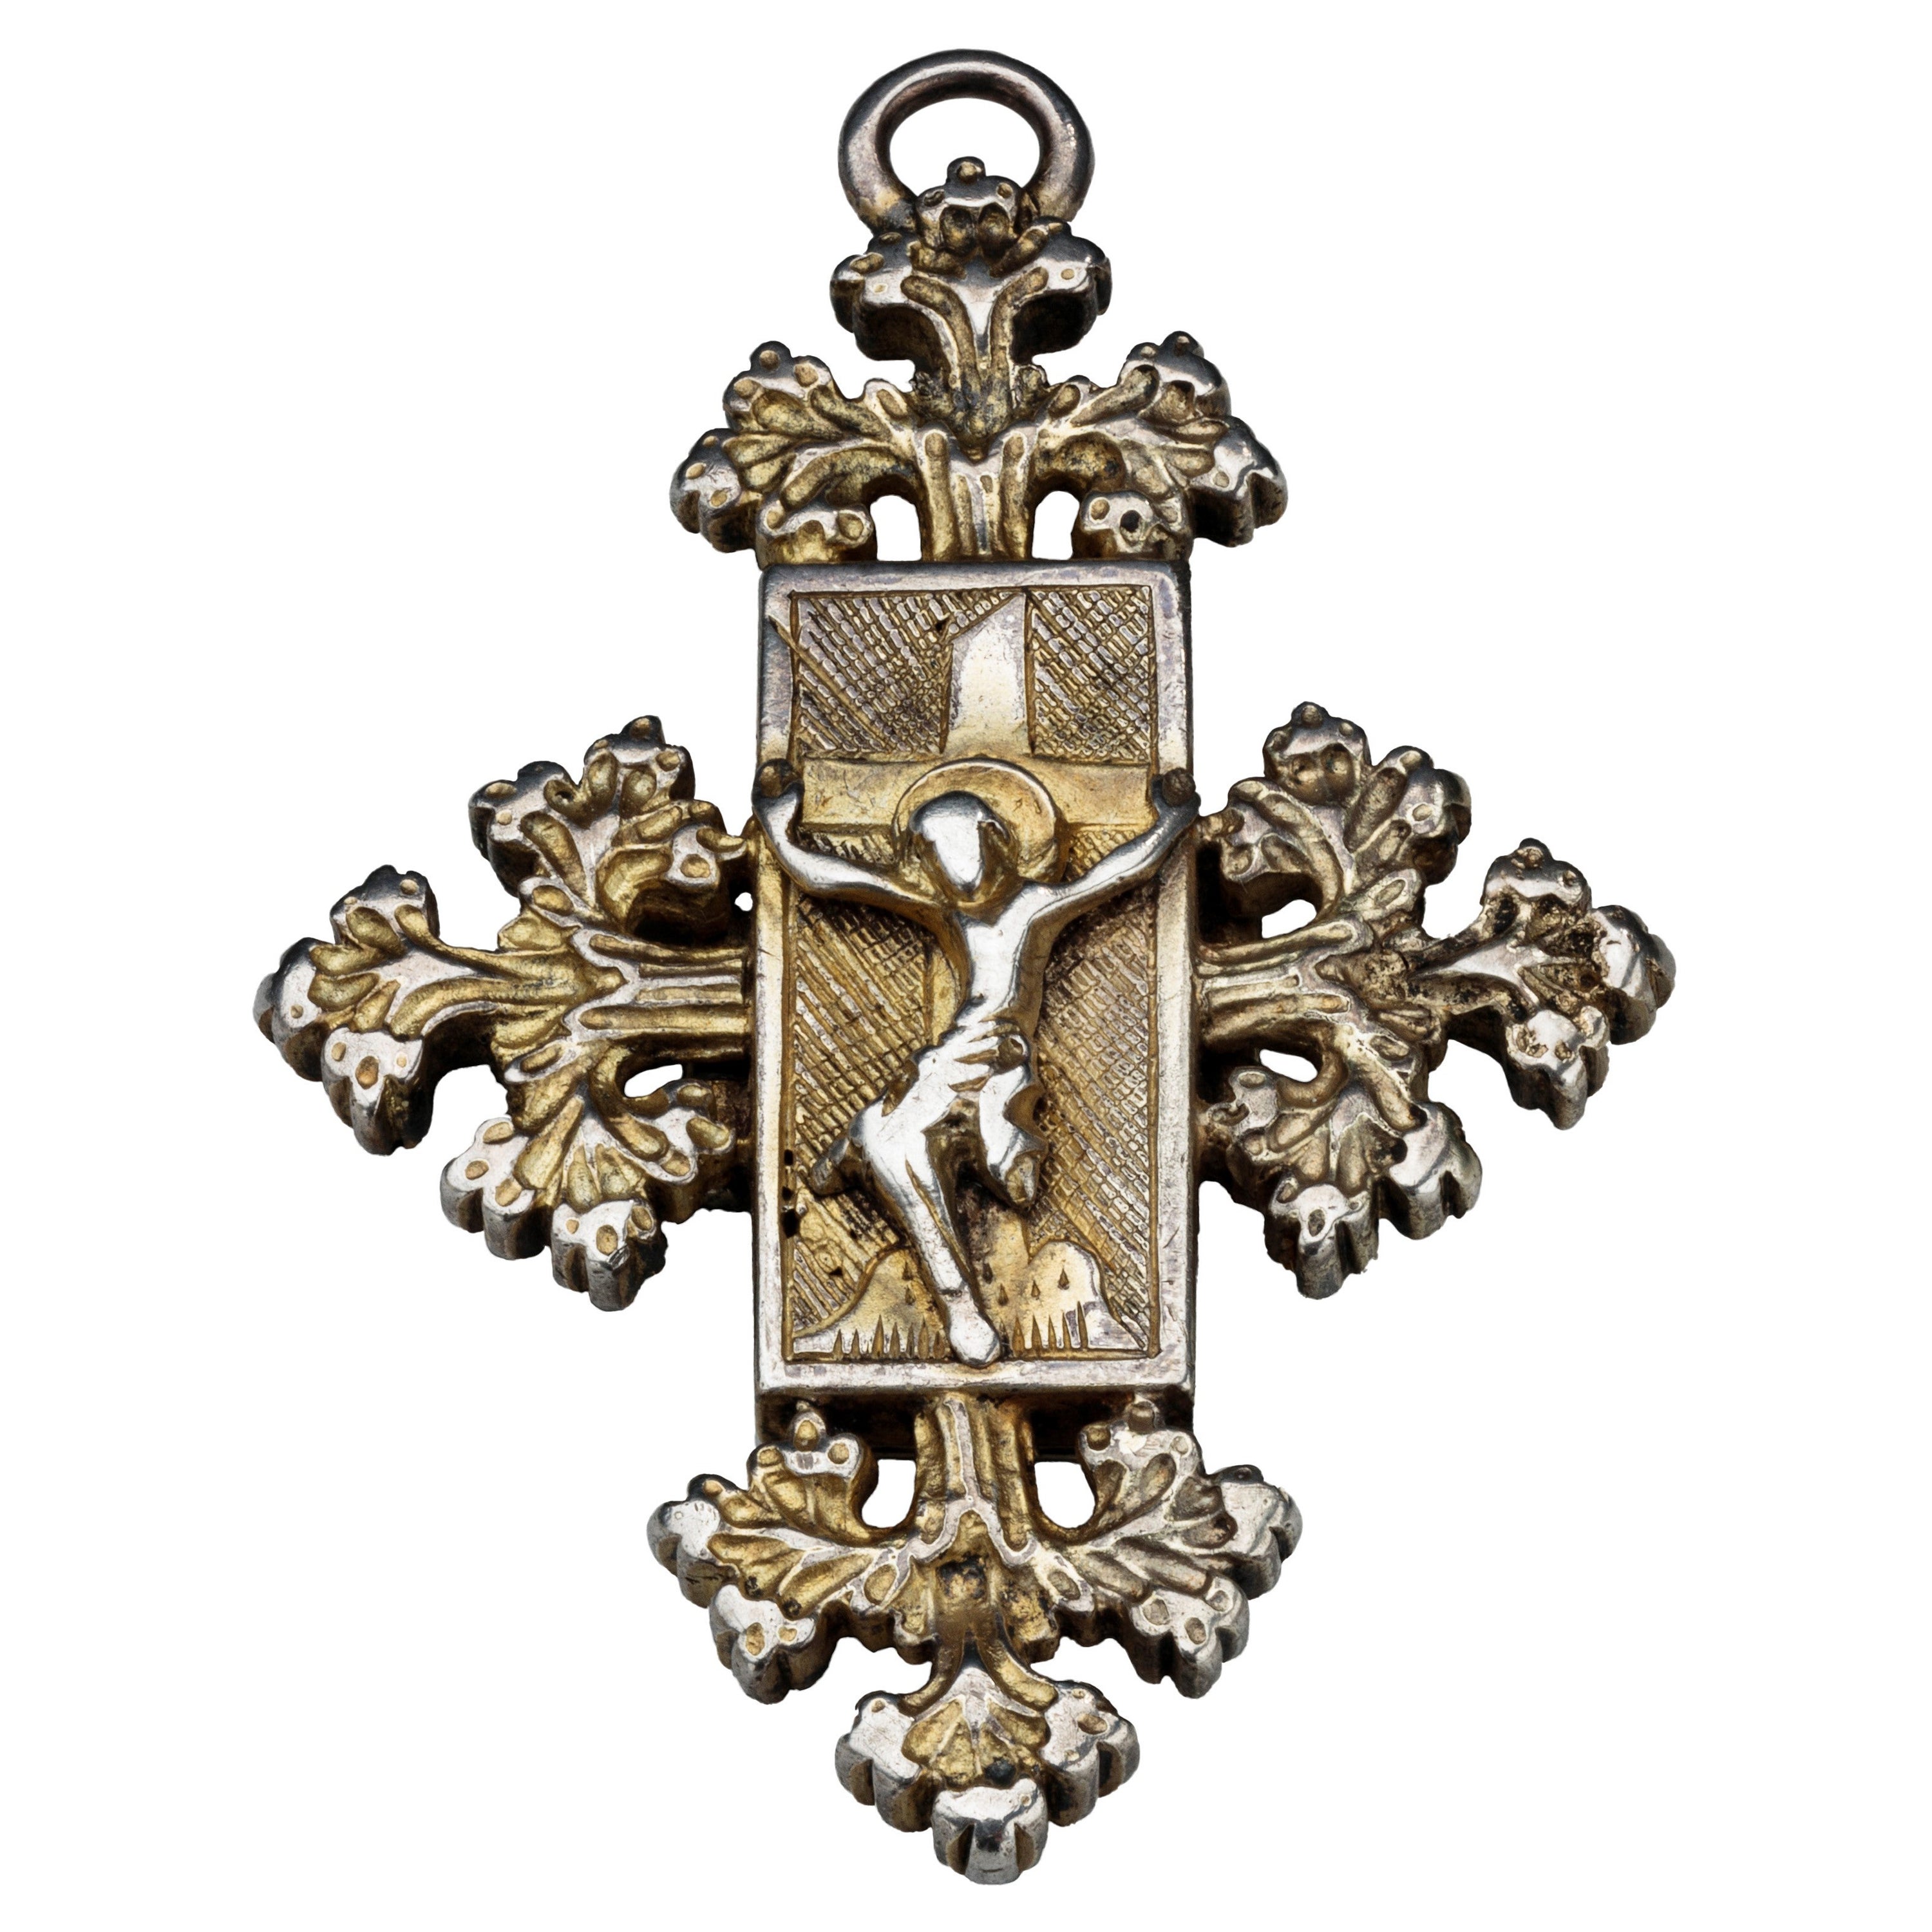 Reliquary-Anhänger des fünfzehnten Jahrhunderts mit Christus am Kreuz